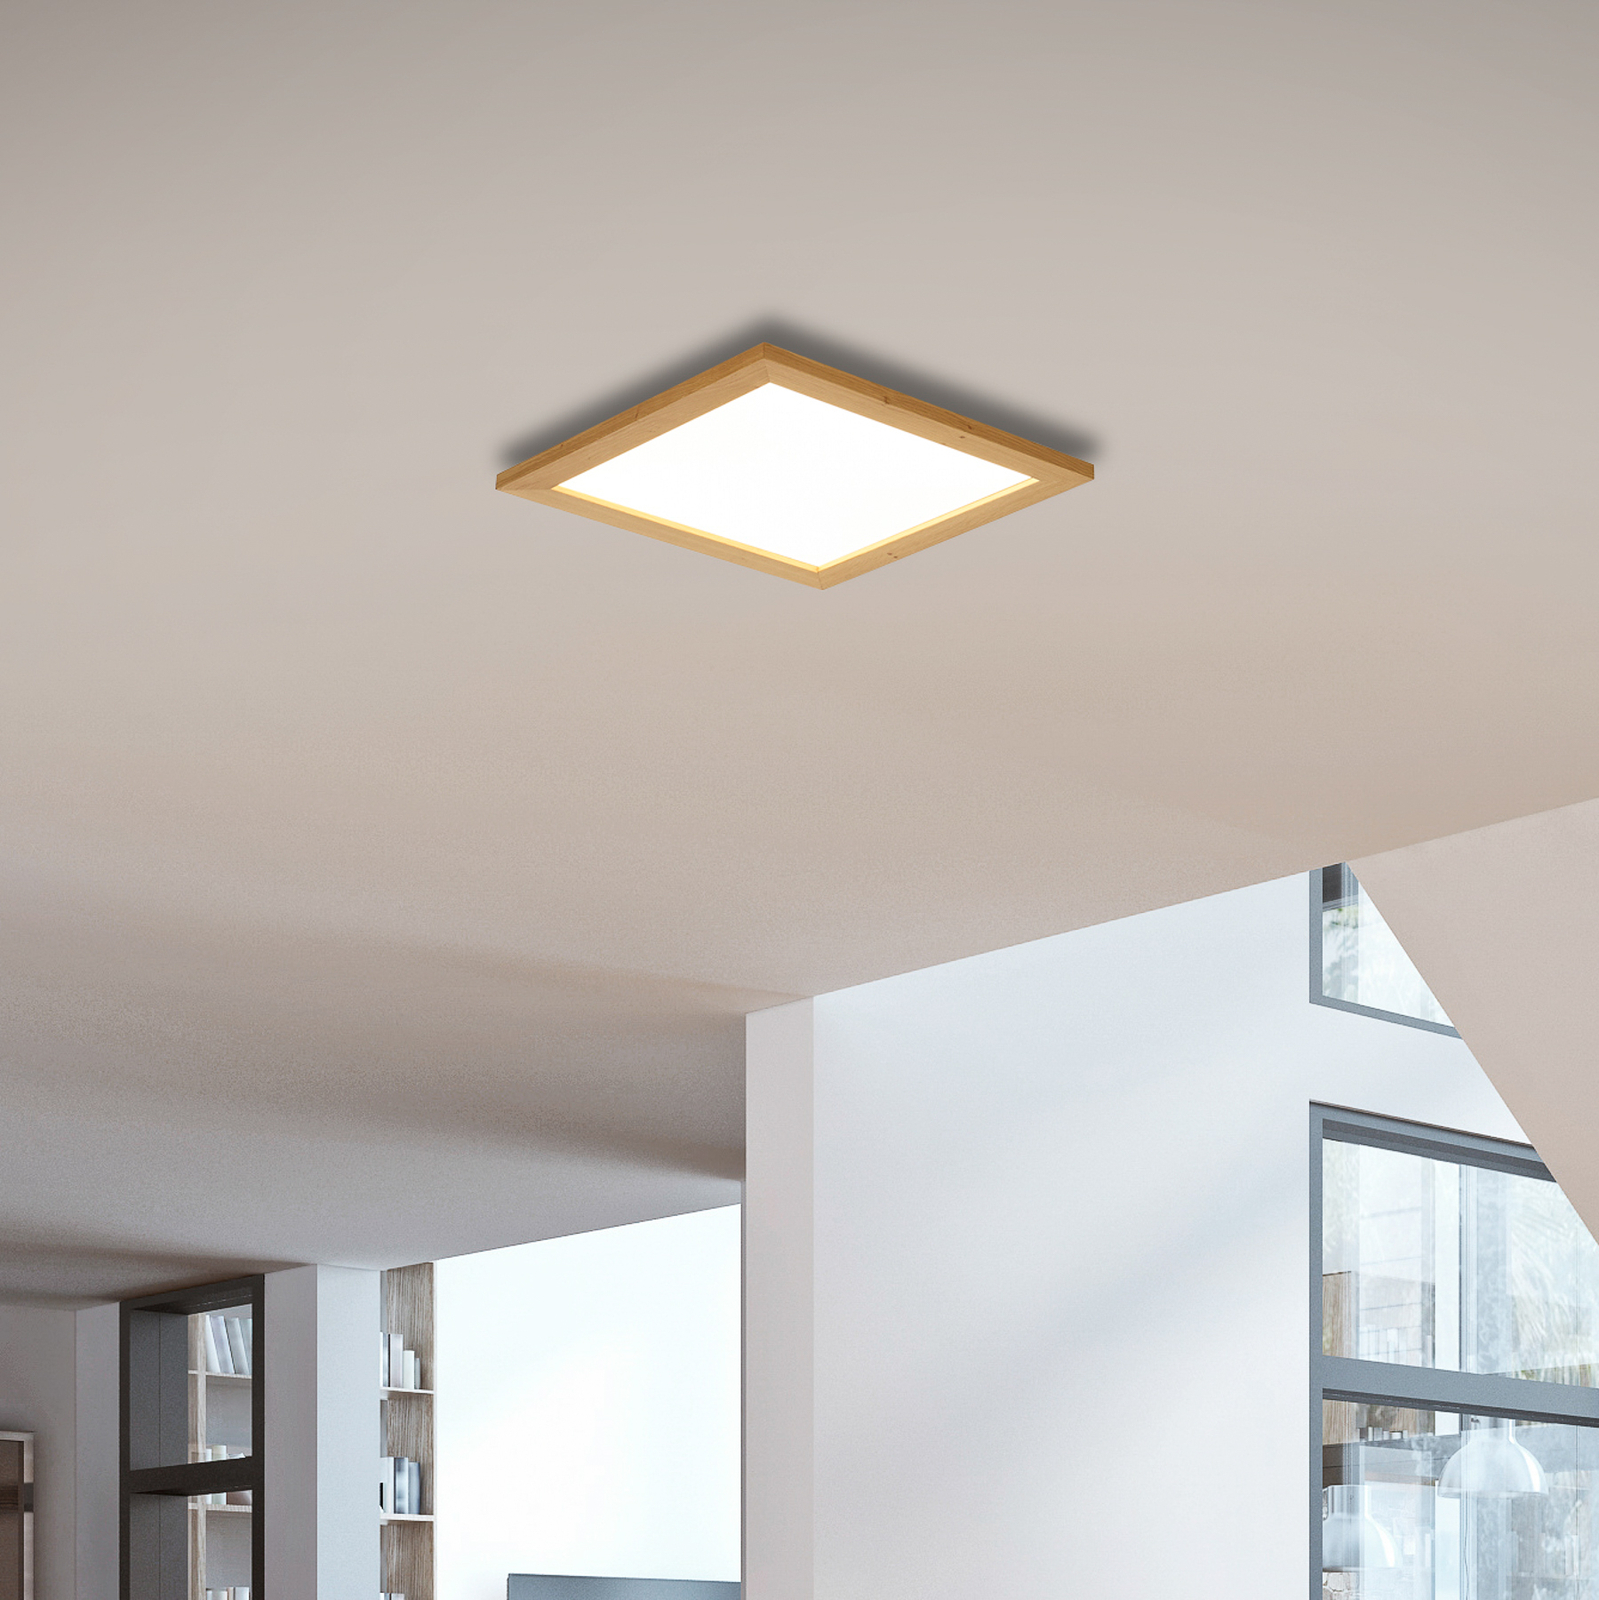 Quitani Aurinor panel LED, roble natural, 45 cm